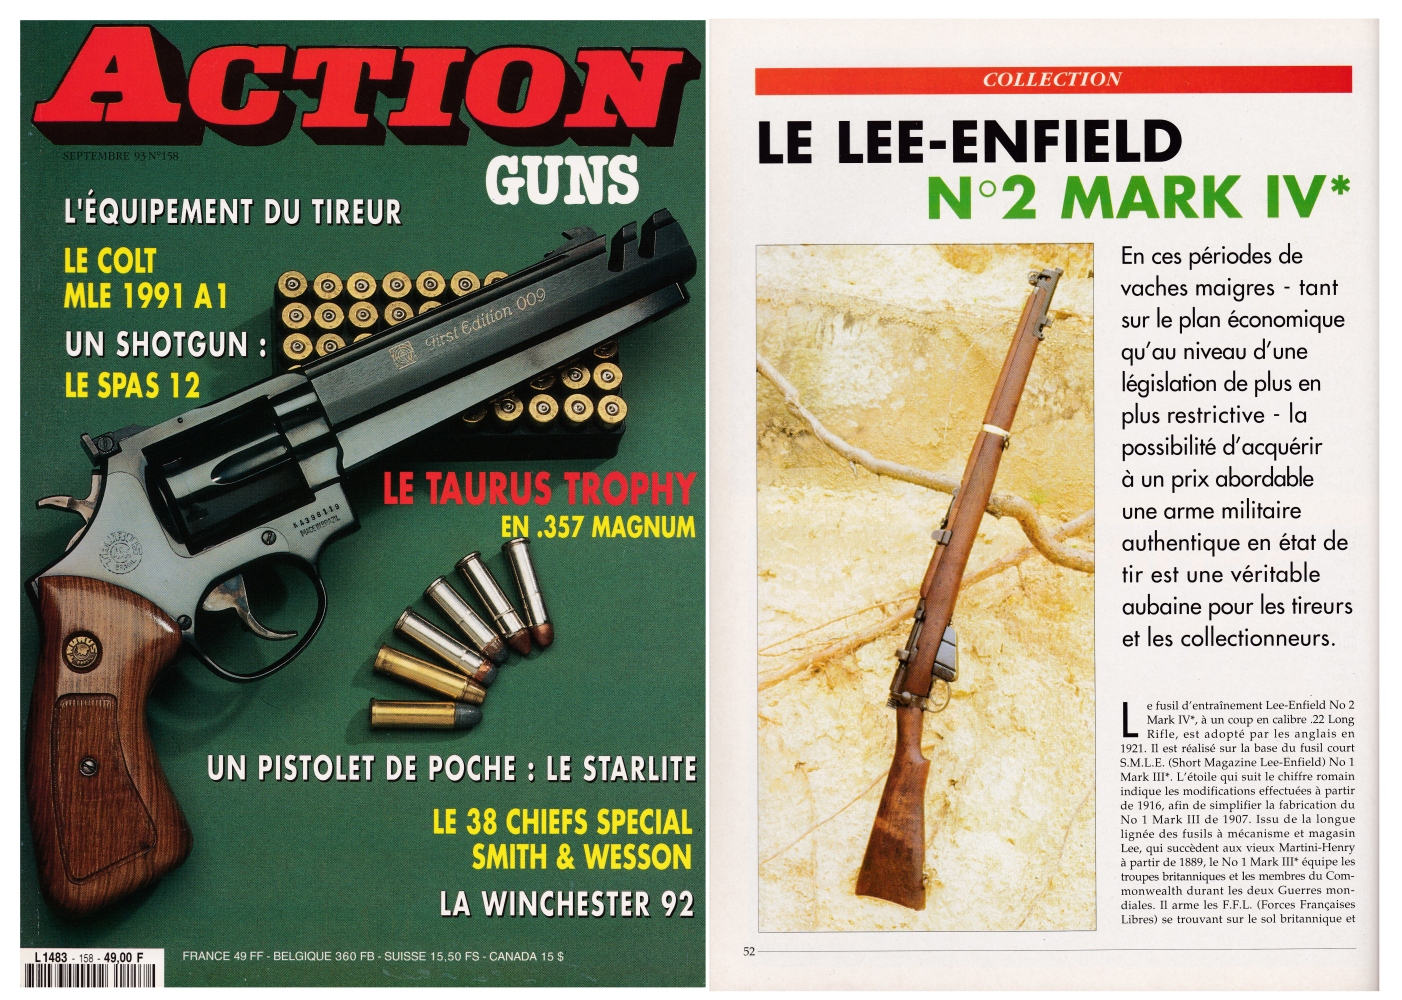 Le banc d'essai du fusil d’entrainement Lee-Enfield N°2 Mark IV* a été publié sur 6 pages dans le magazine Action Guns n°158 (septembre 1993).